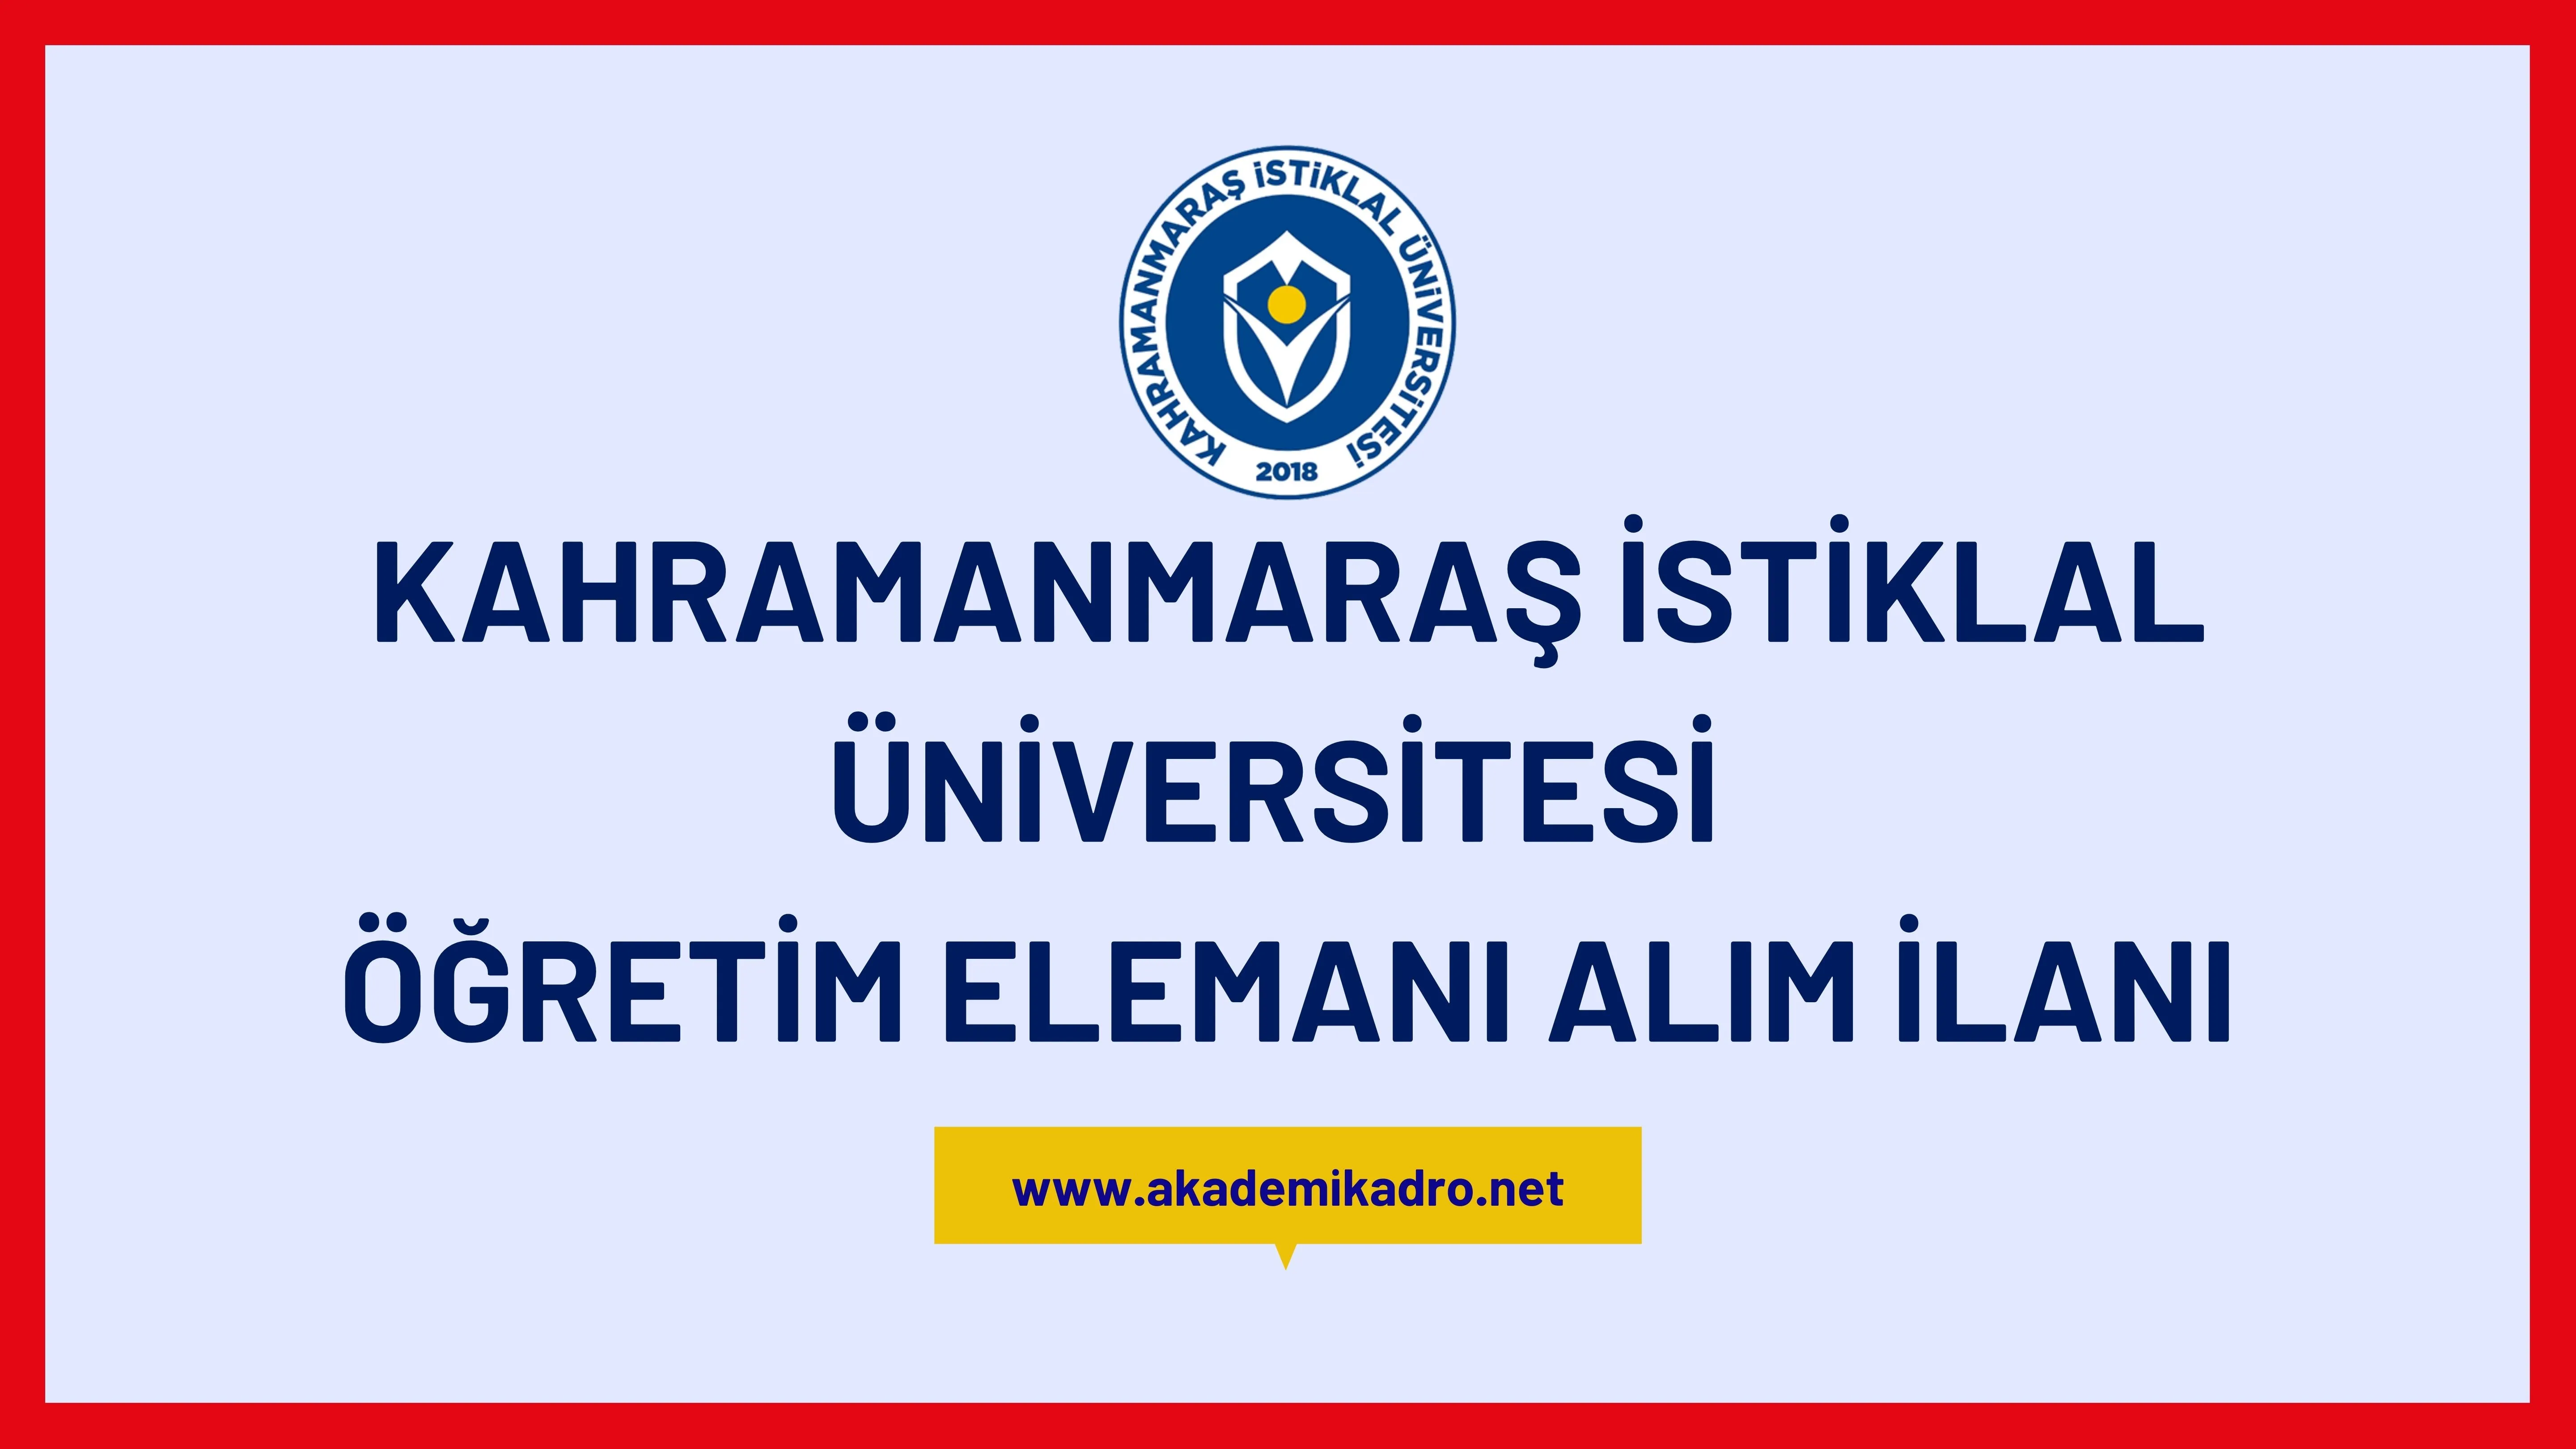 Kahramanmaraş İstiklal Üniversitesi 4 Öğretim görevlisi alacak.